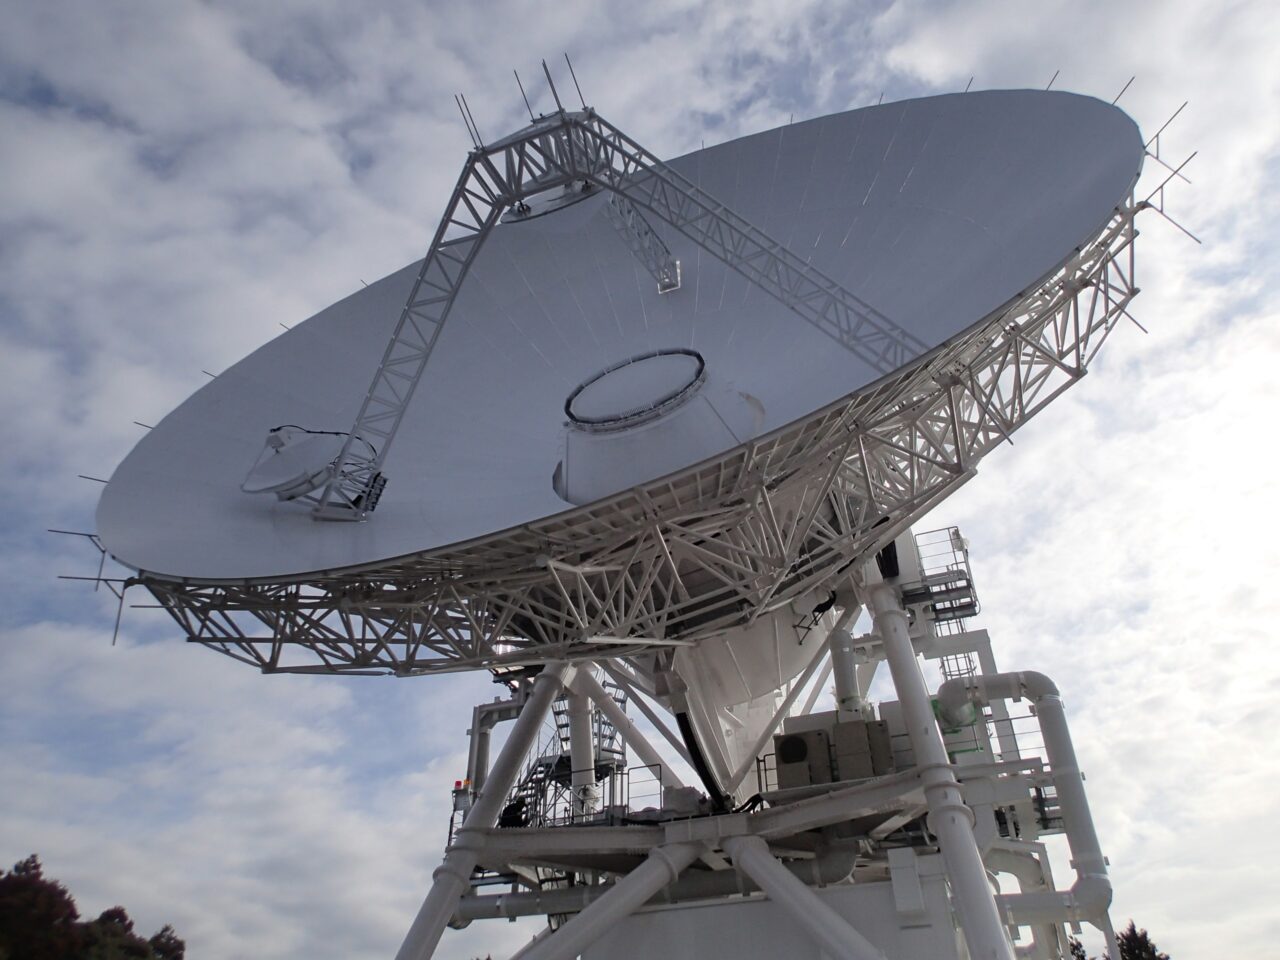 Duża antena satelitarna skierowana ku niebu z zagiętym ramieniem i metalową konstrukcją wsporcza, na tle częściowo zachmurzonego nieba.